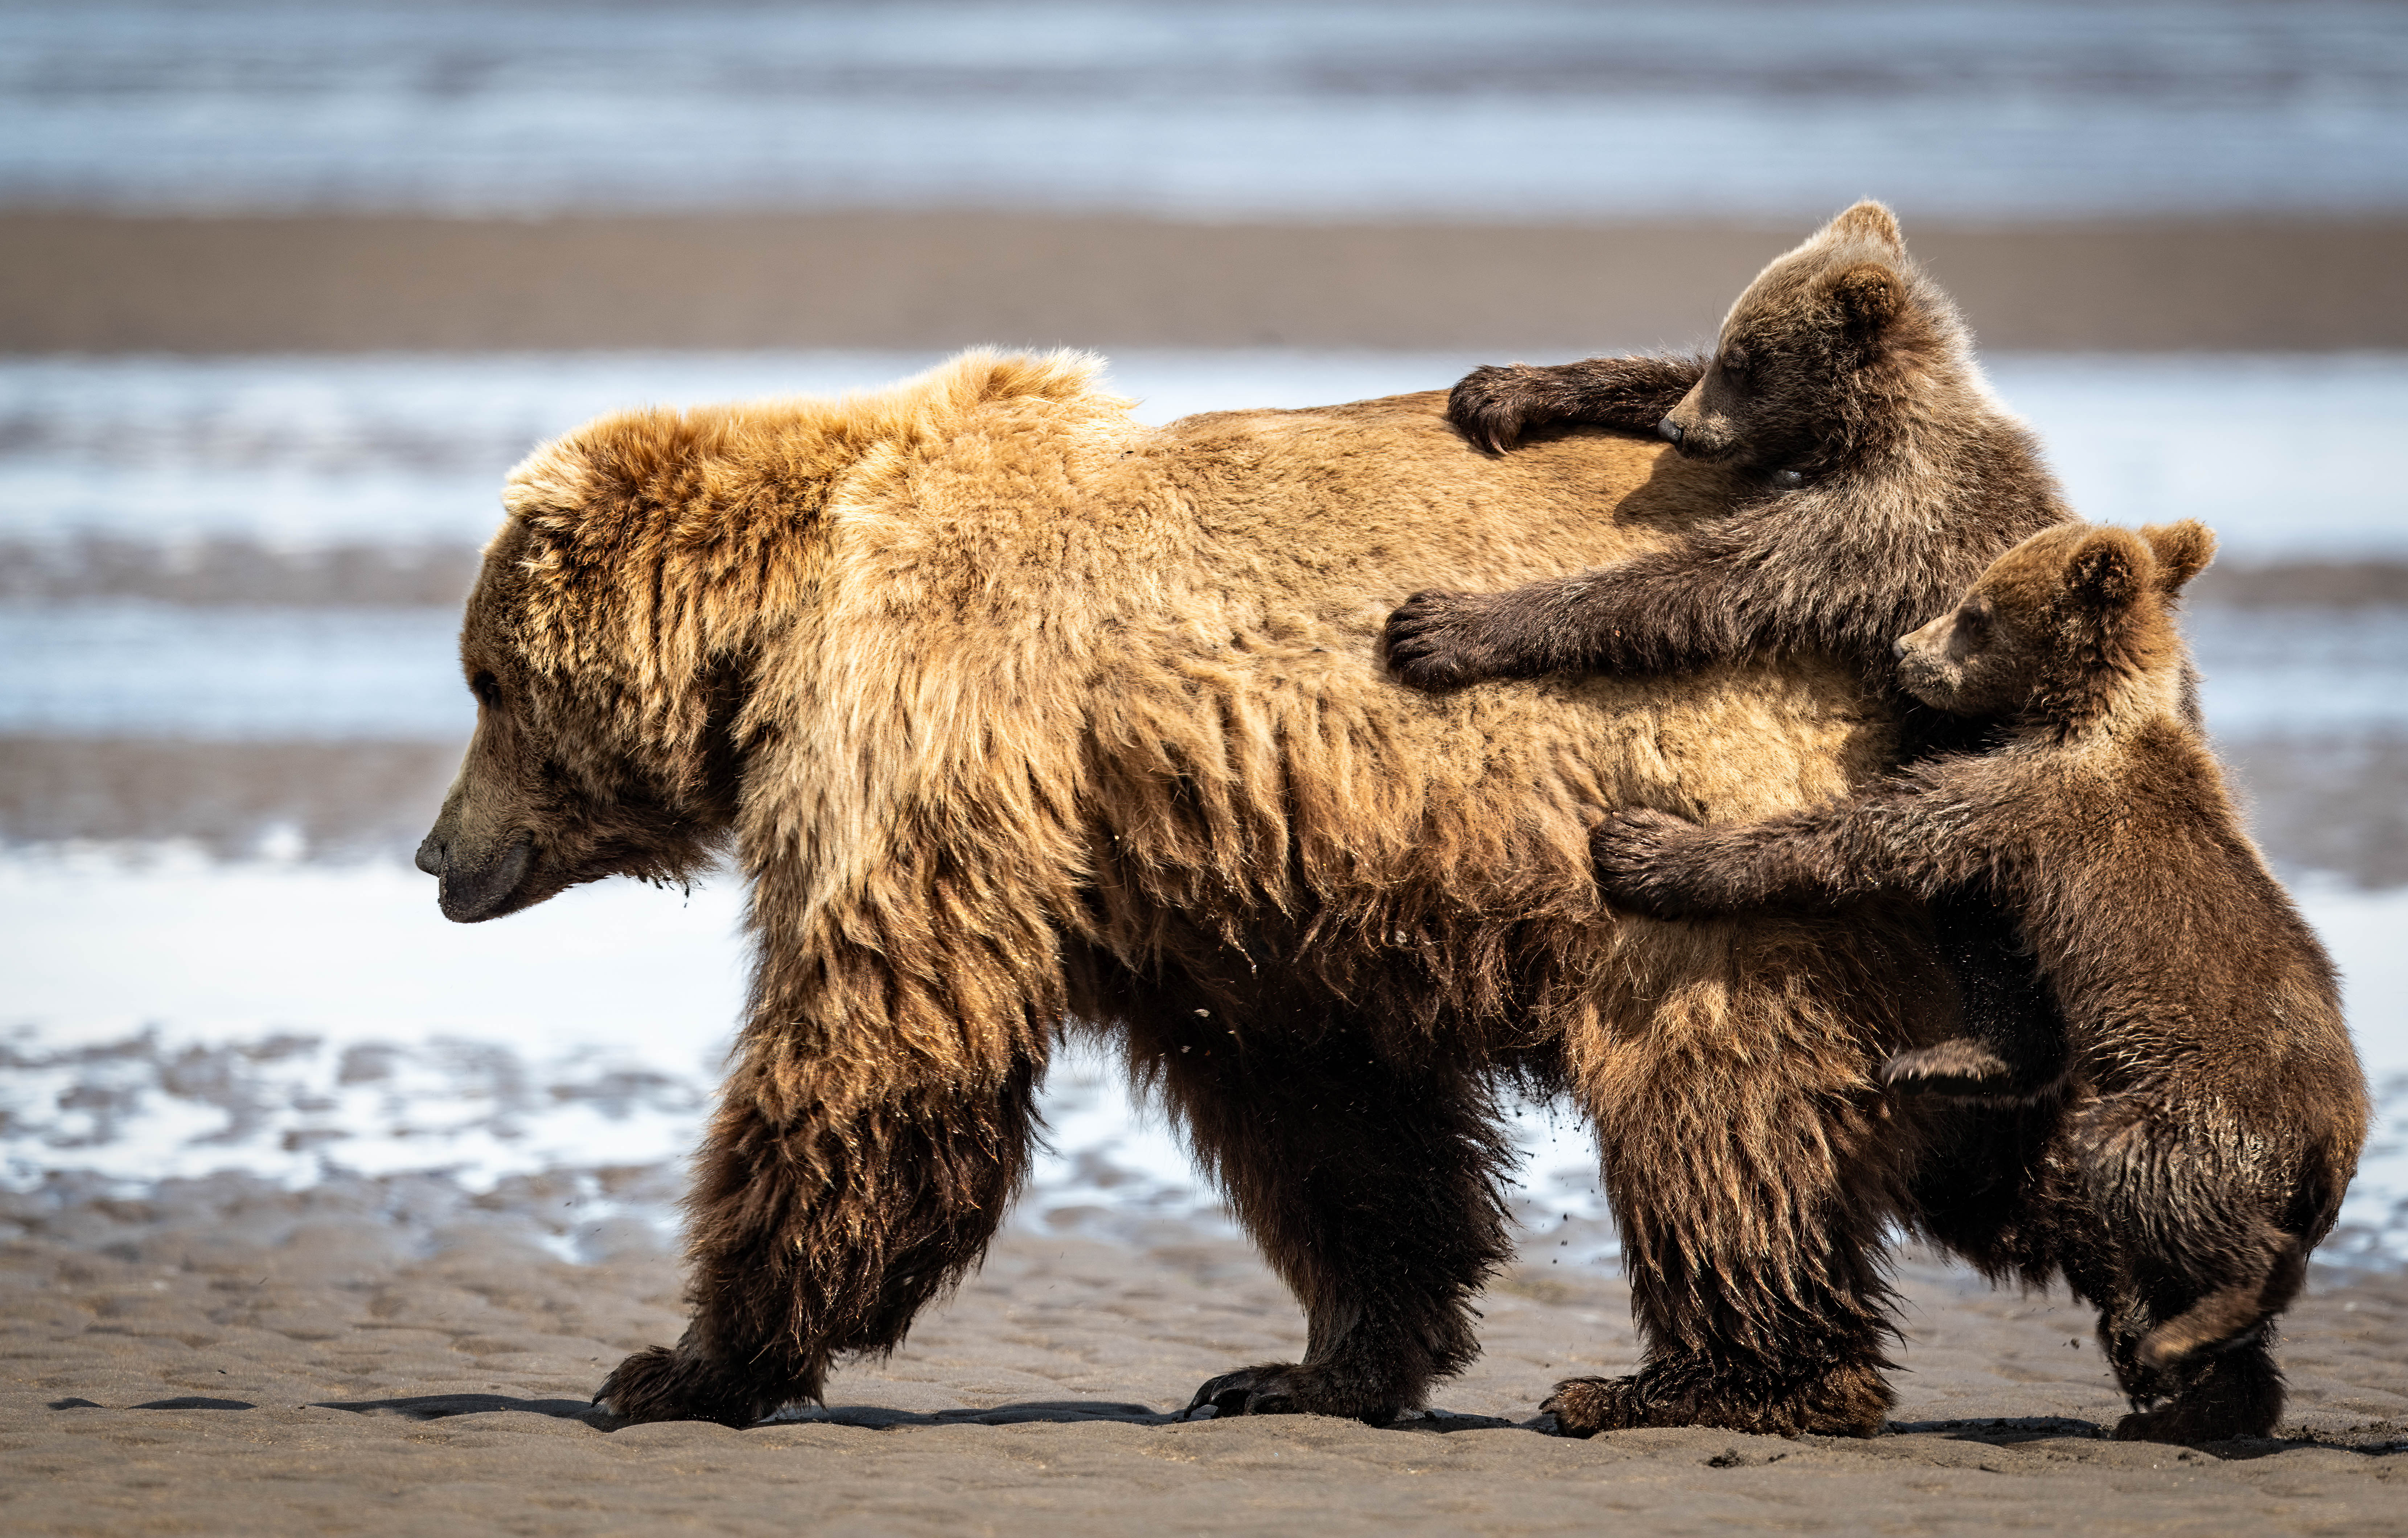 Uma ursa vai embora enquanto seus filhotes se agarram atrás dela.